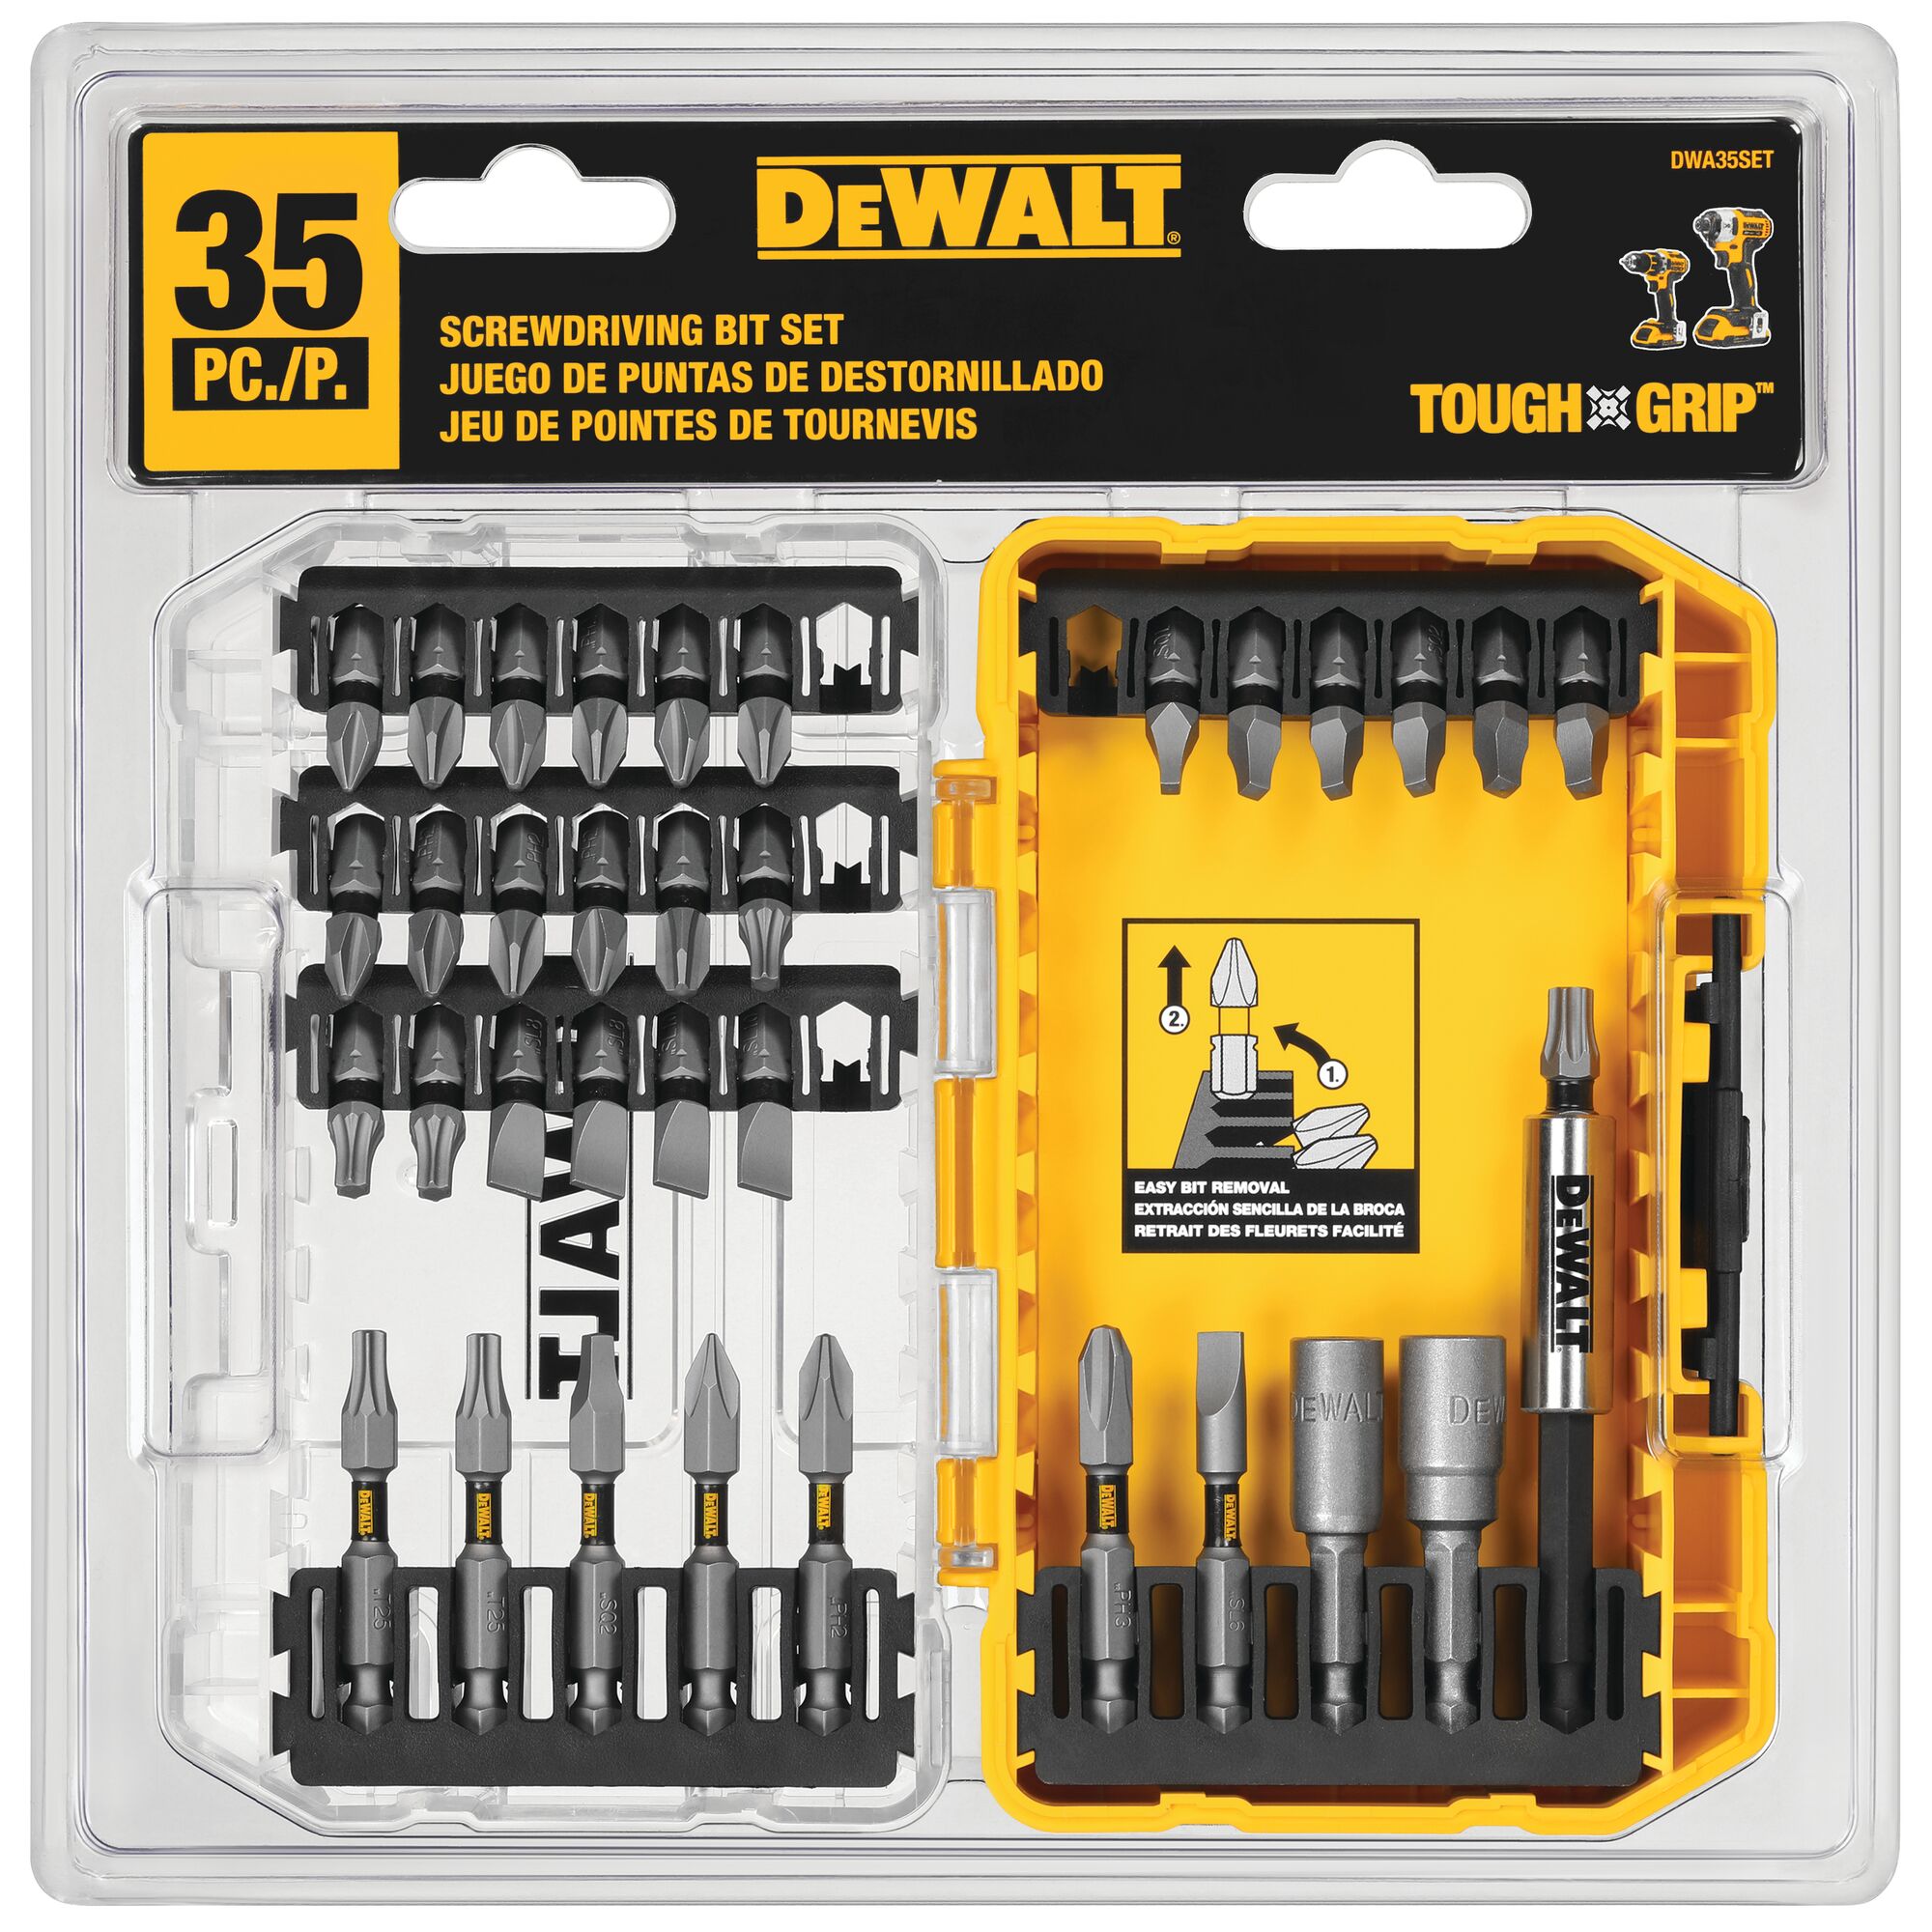 Dewalt DWAMF35RA Steel Drill and Driver Bit Set Right Angle Adapter 35 pc.  New! 885911720786